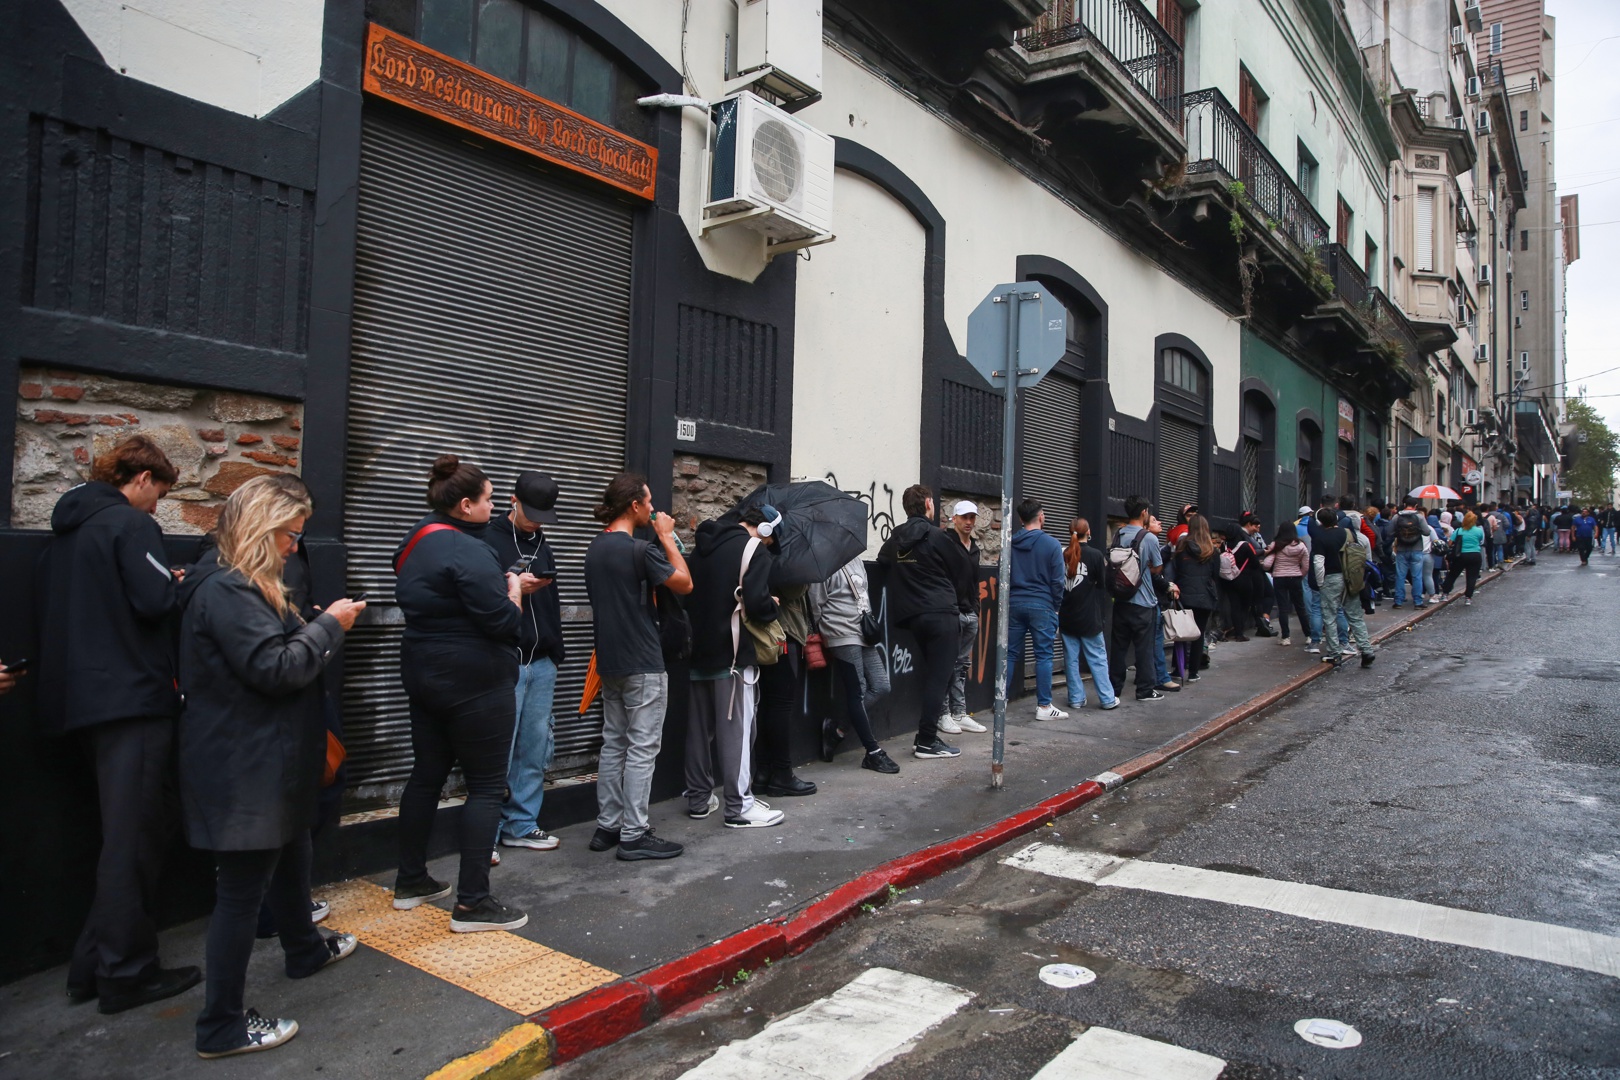 uruguayos hacen una larga fila bajo lluvia para obtener la credencial cívica